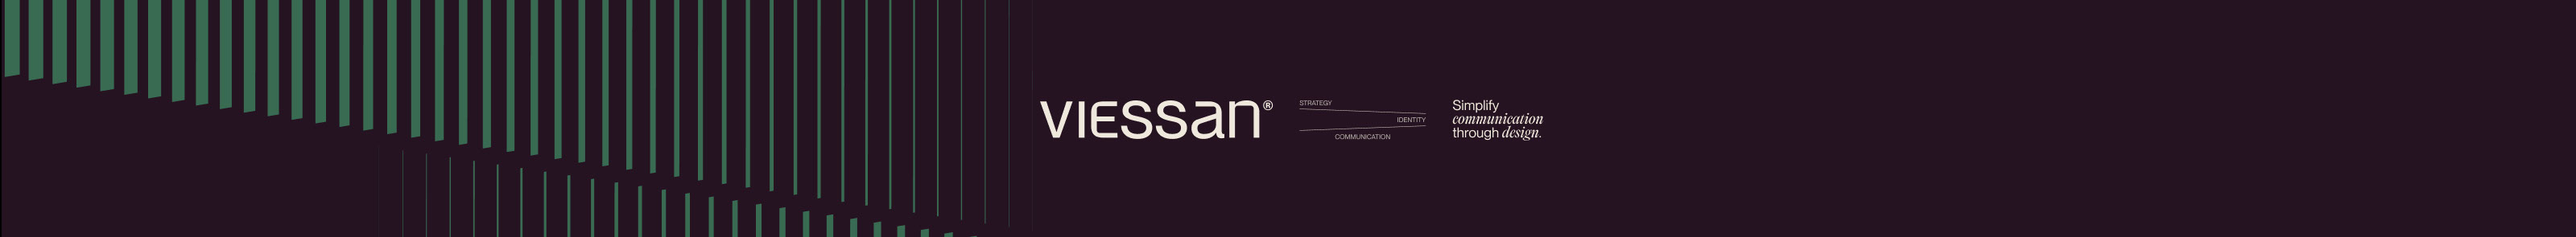 Banner de perfil de Viessan Studio